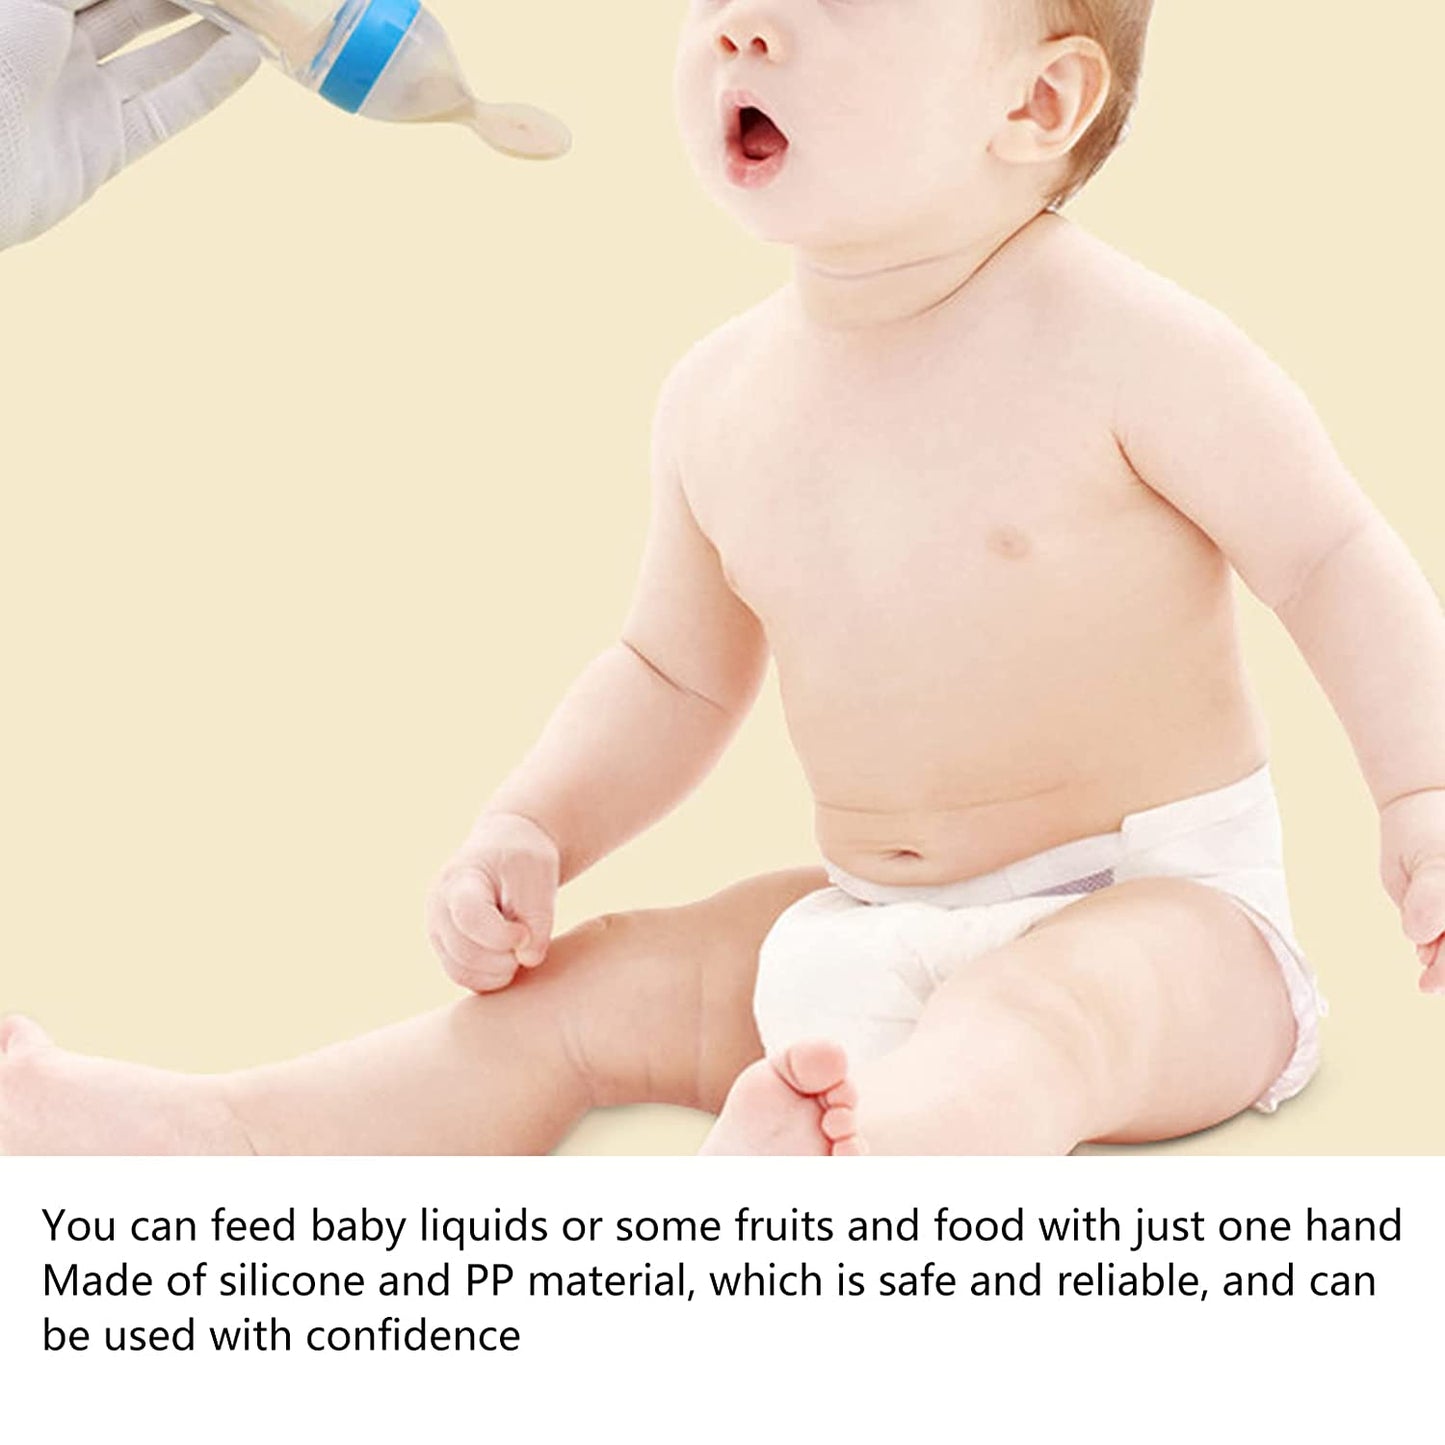 Baby Bottle Spoon, Feeding Spoon